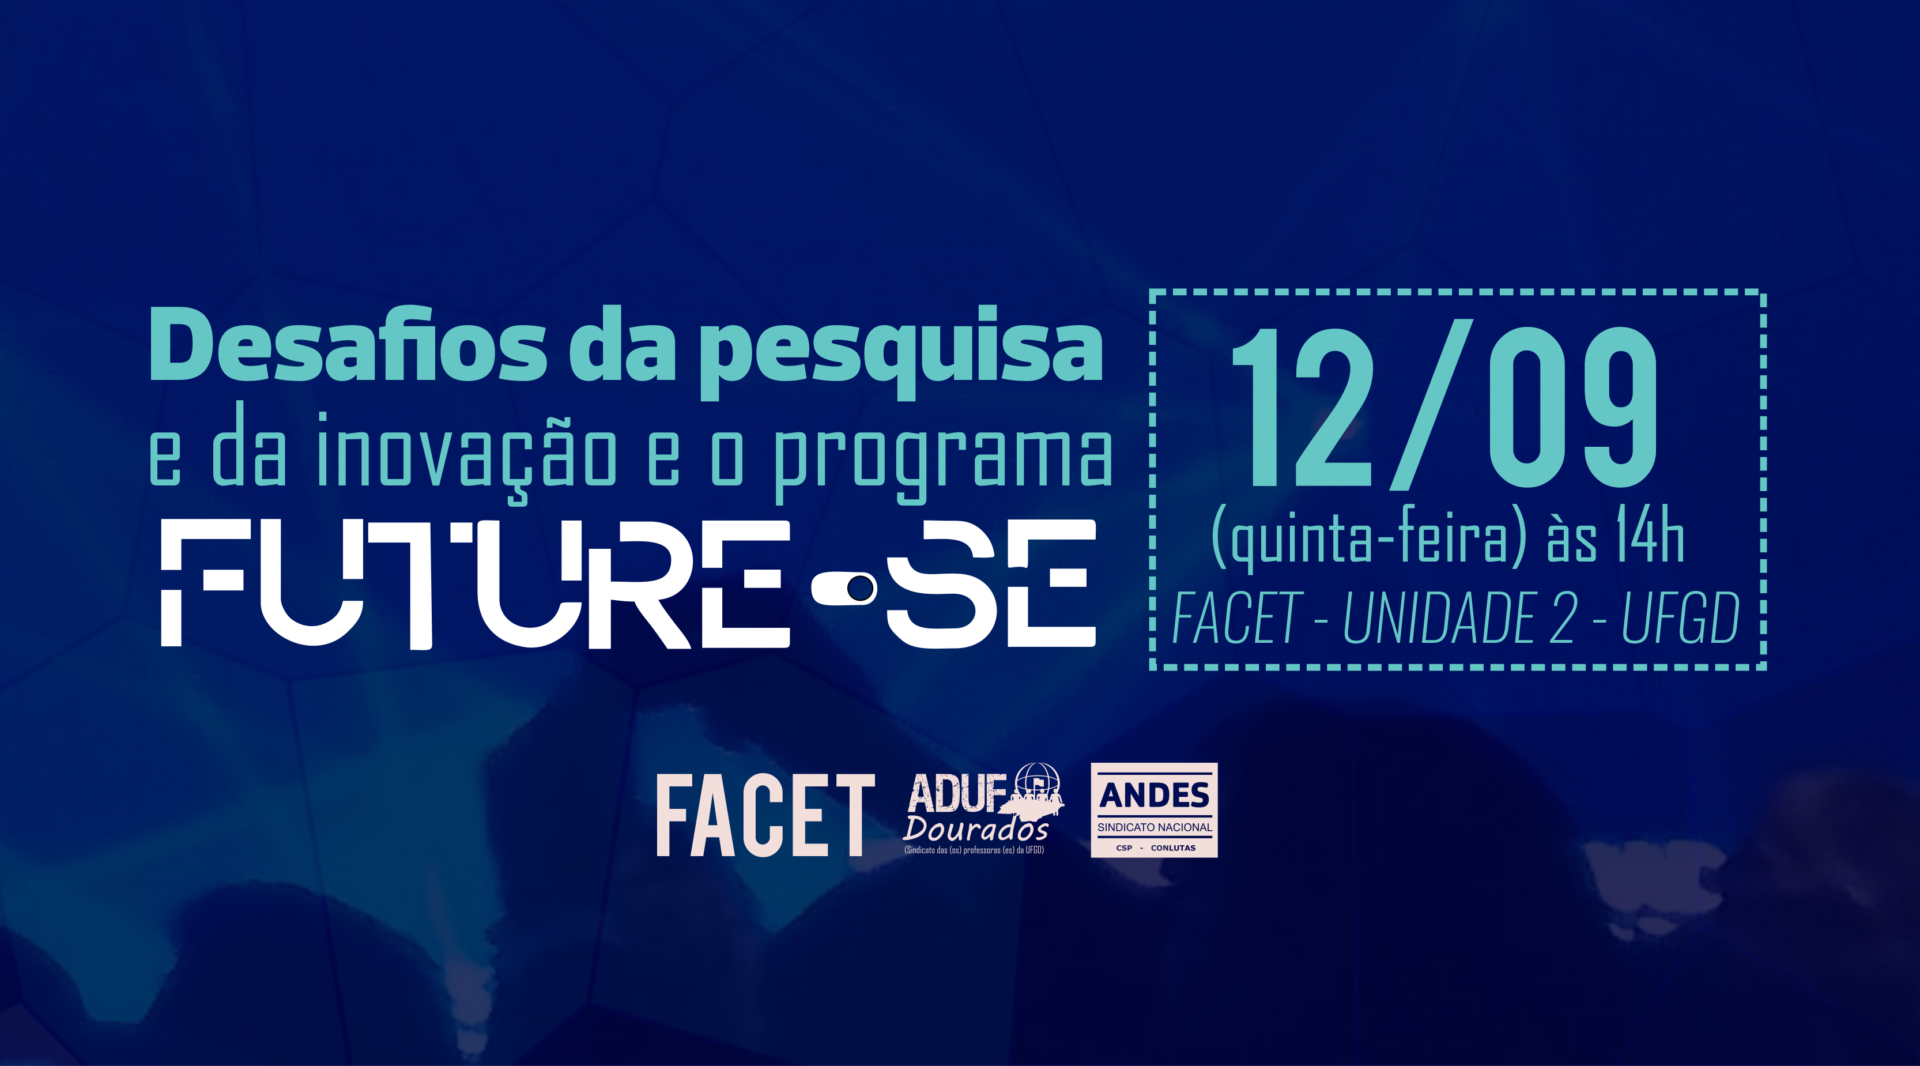 Debate sobre os “Desafios da pesquisa e da inovação e o programa FUTURE-SE” (12/09)